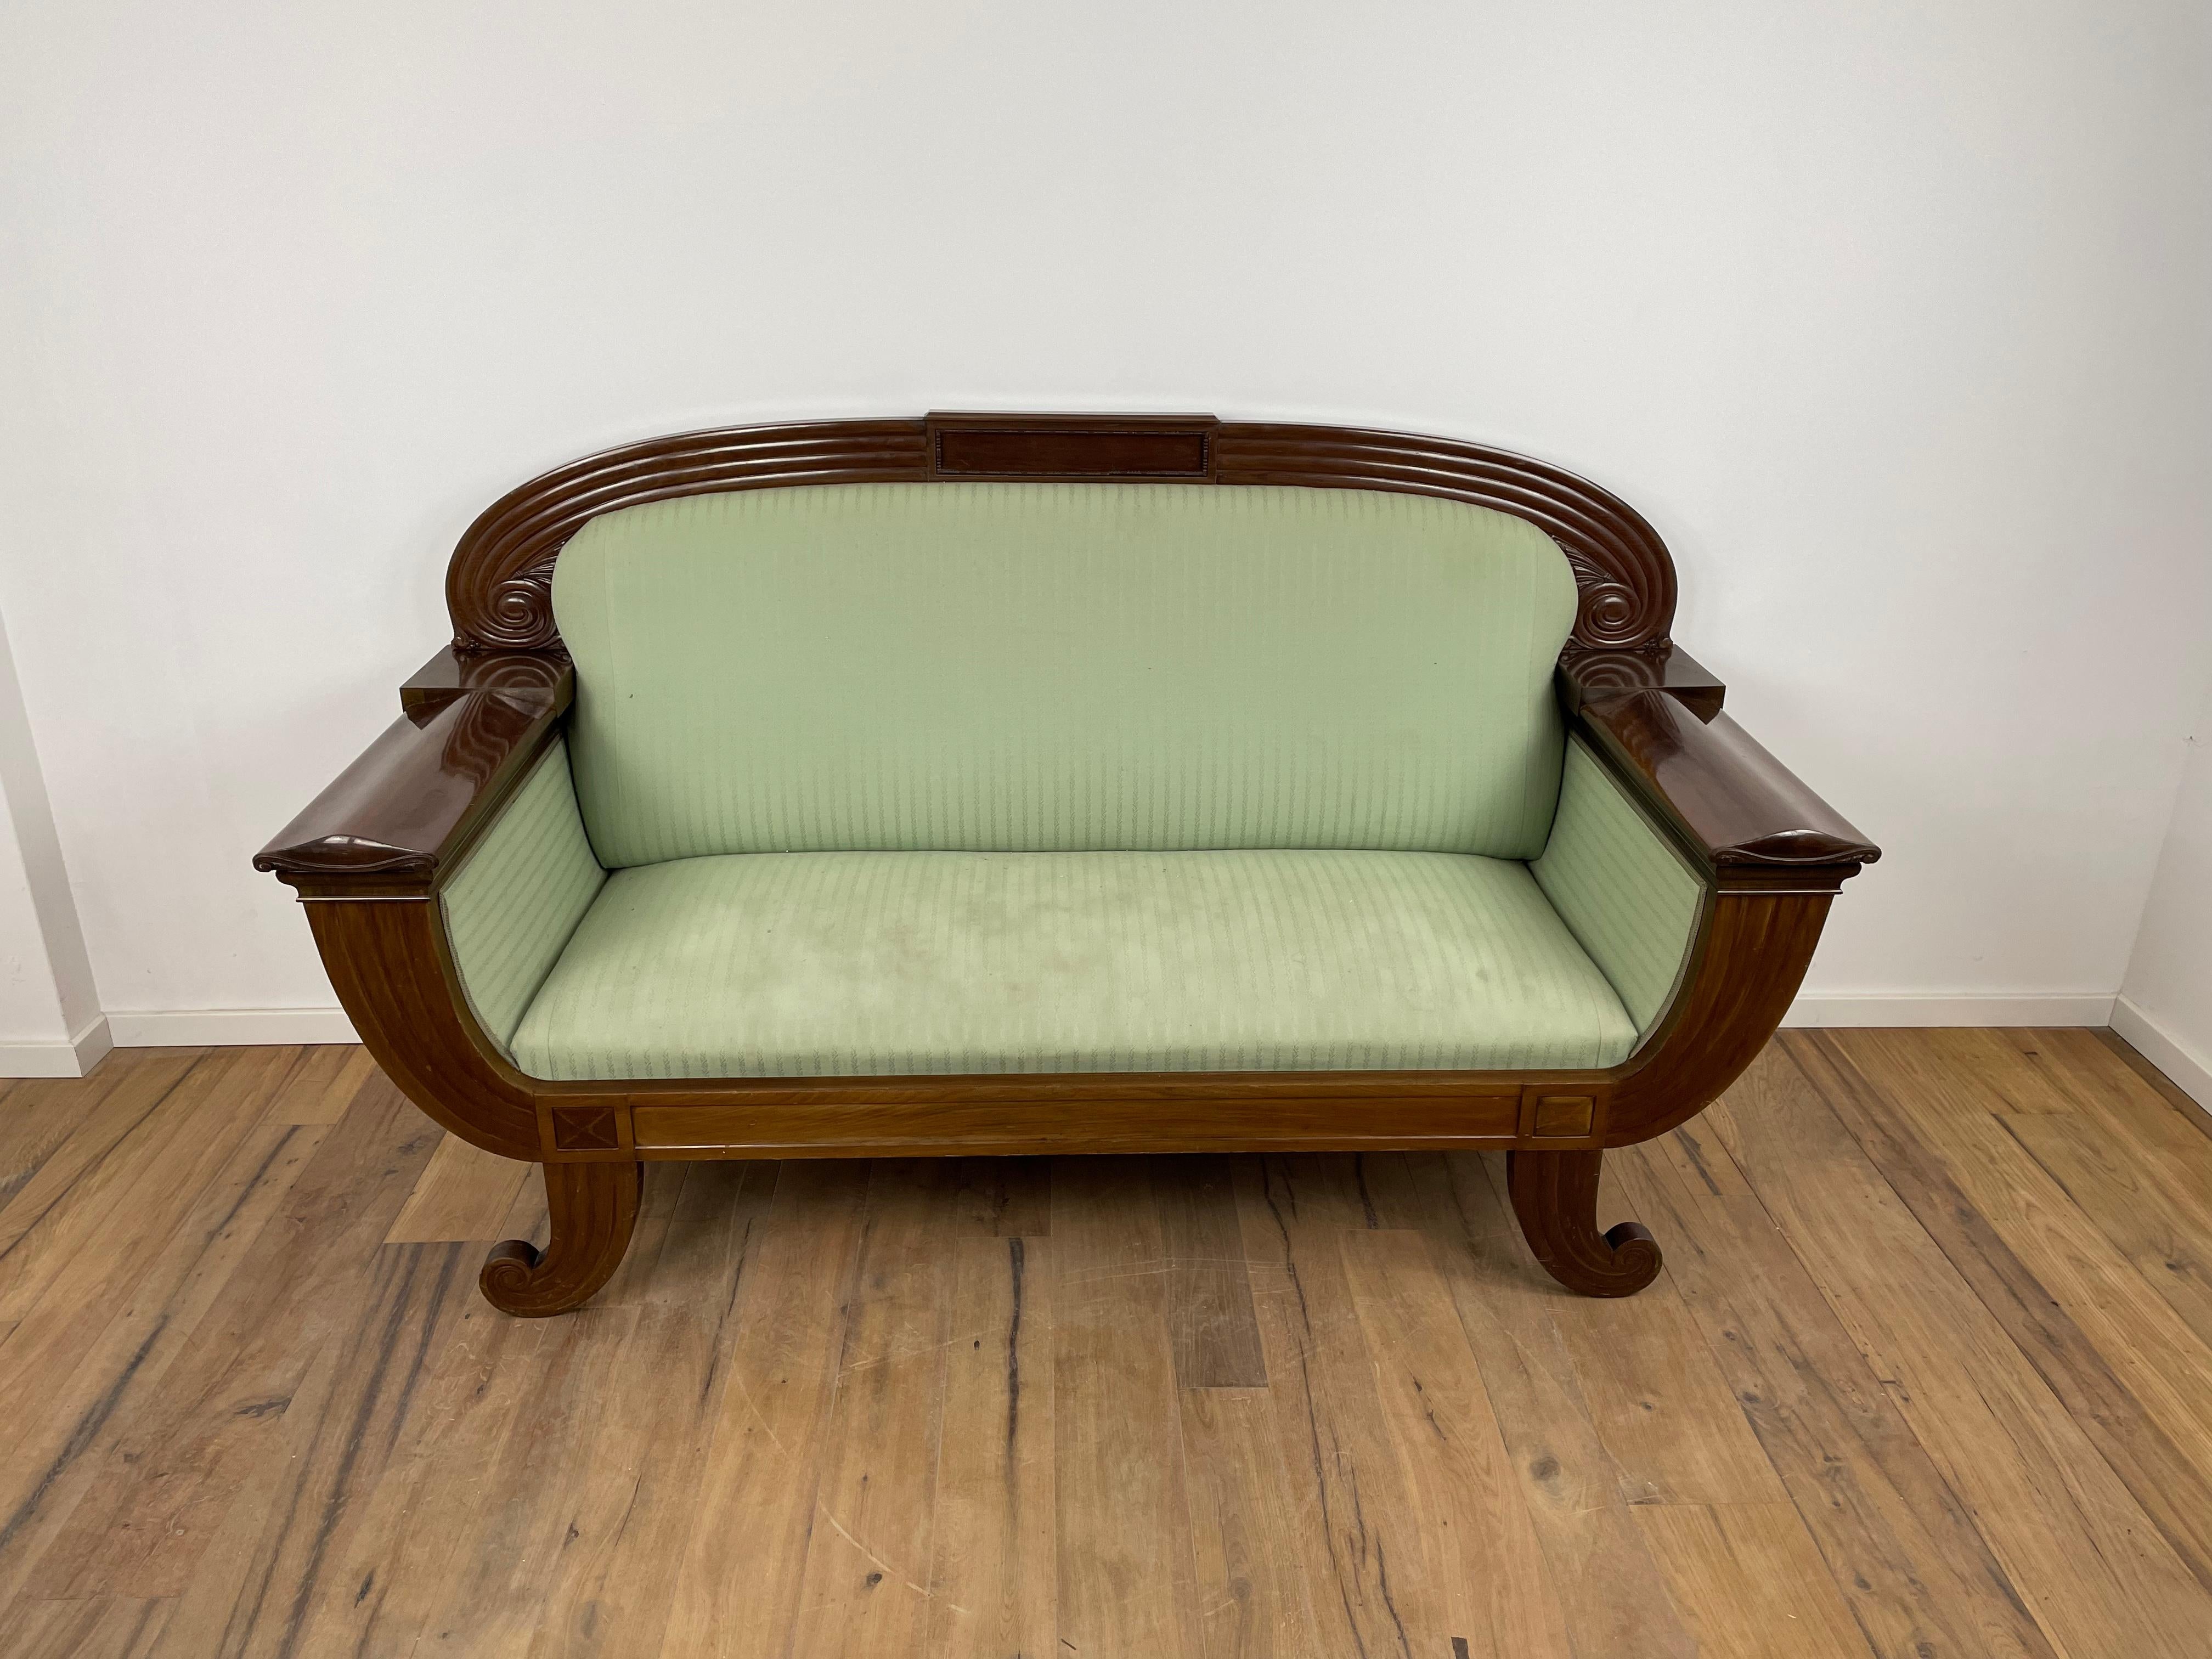 Wunderschönes Sofa von Georg Kofoed aus Dänemark. Dieses Sofa ist in einem sehr guten Originalzustand - der Stoff und die Oberfläche sind original und in einem fantastischen Zustand für sein Alter. Ein Stück Designgeschichte aus Dänemark von einem